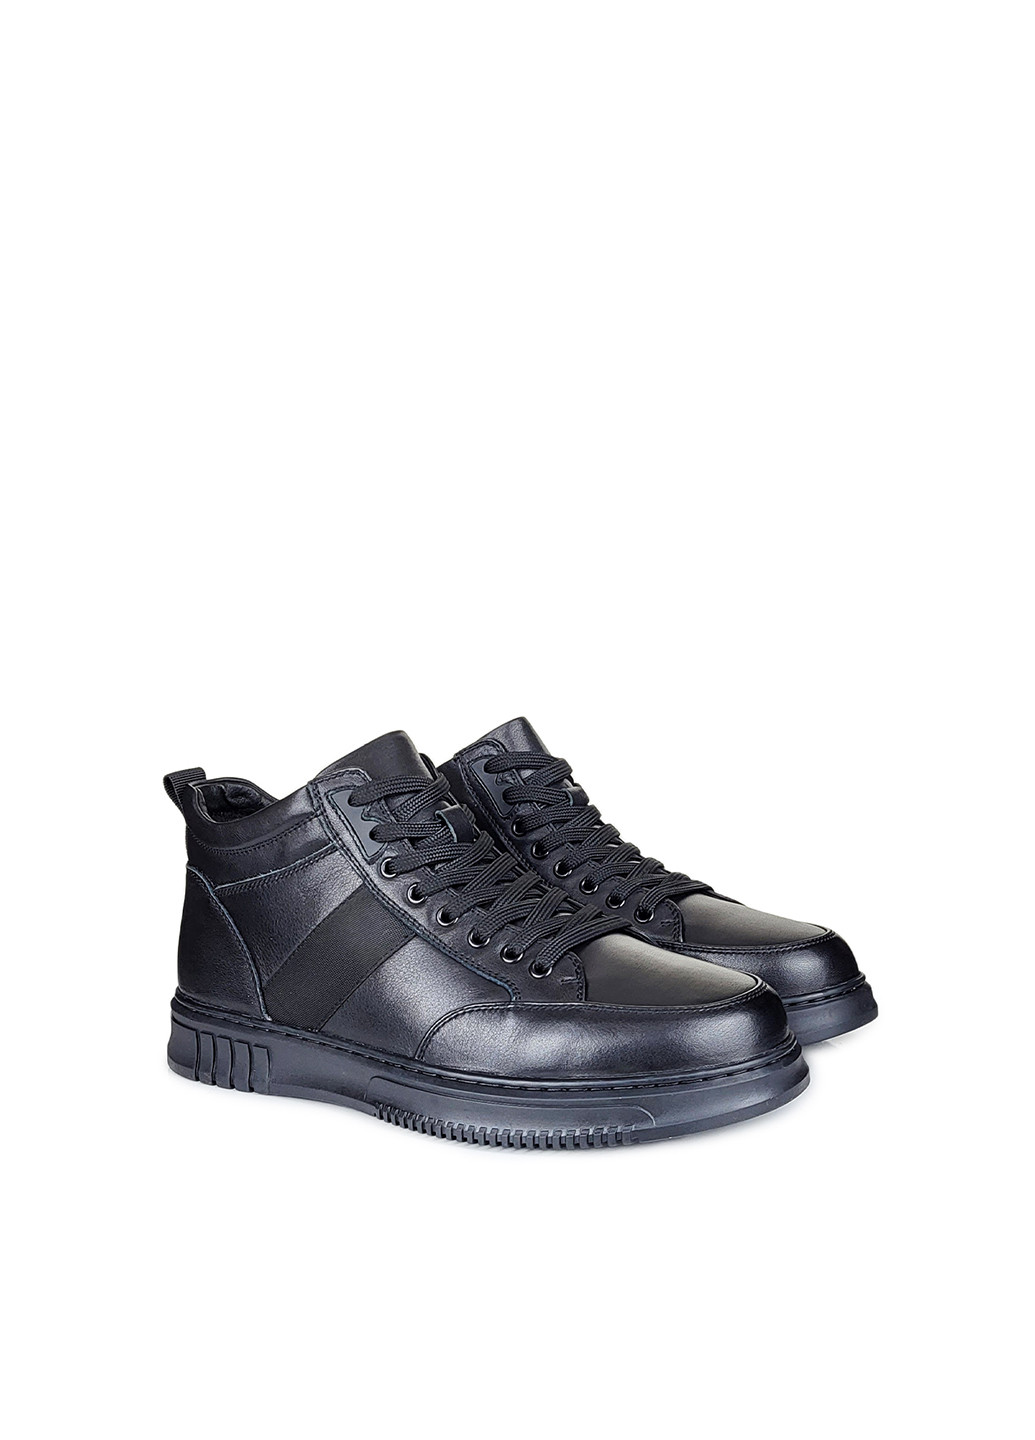 Черные зимние кожаные черные мужские ботинки с мехом,,jx395701m-1 чорн,40 Berisstini